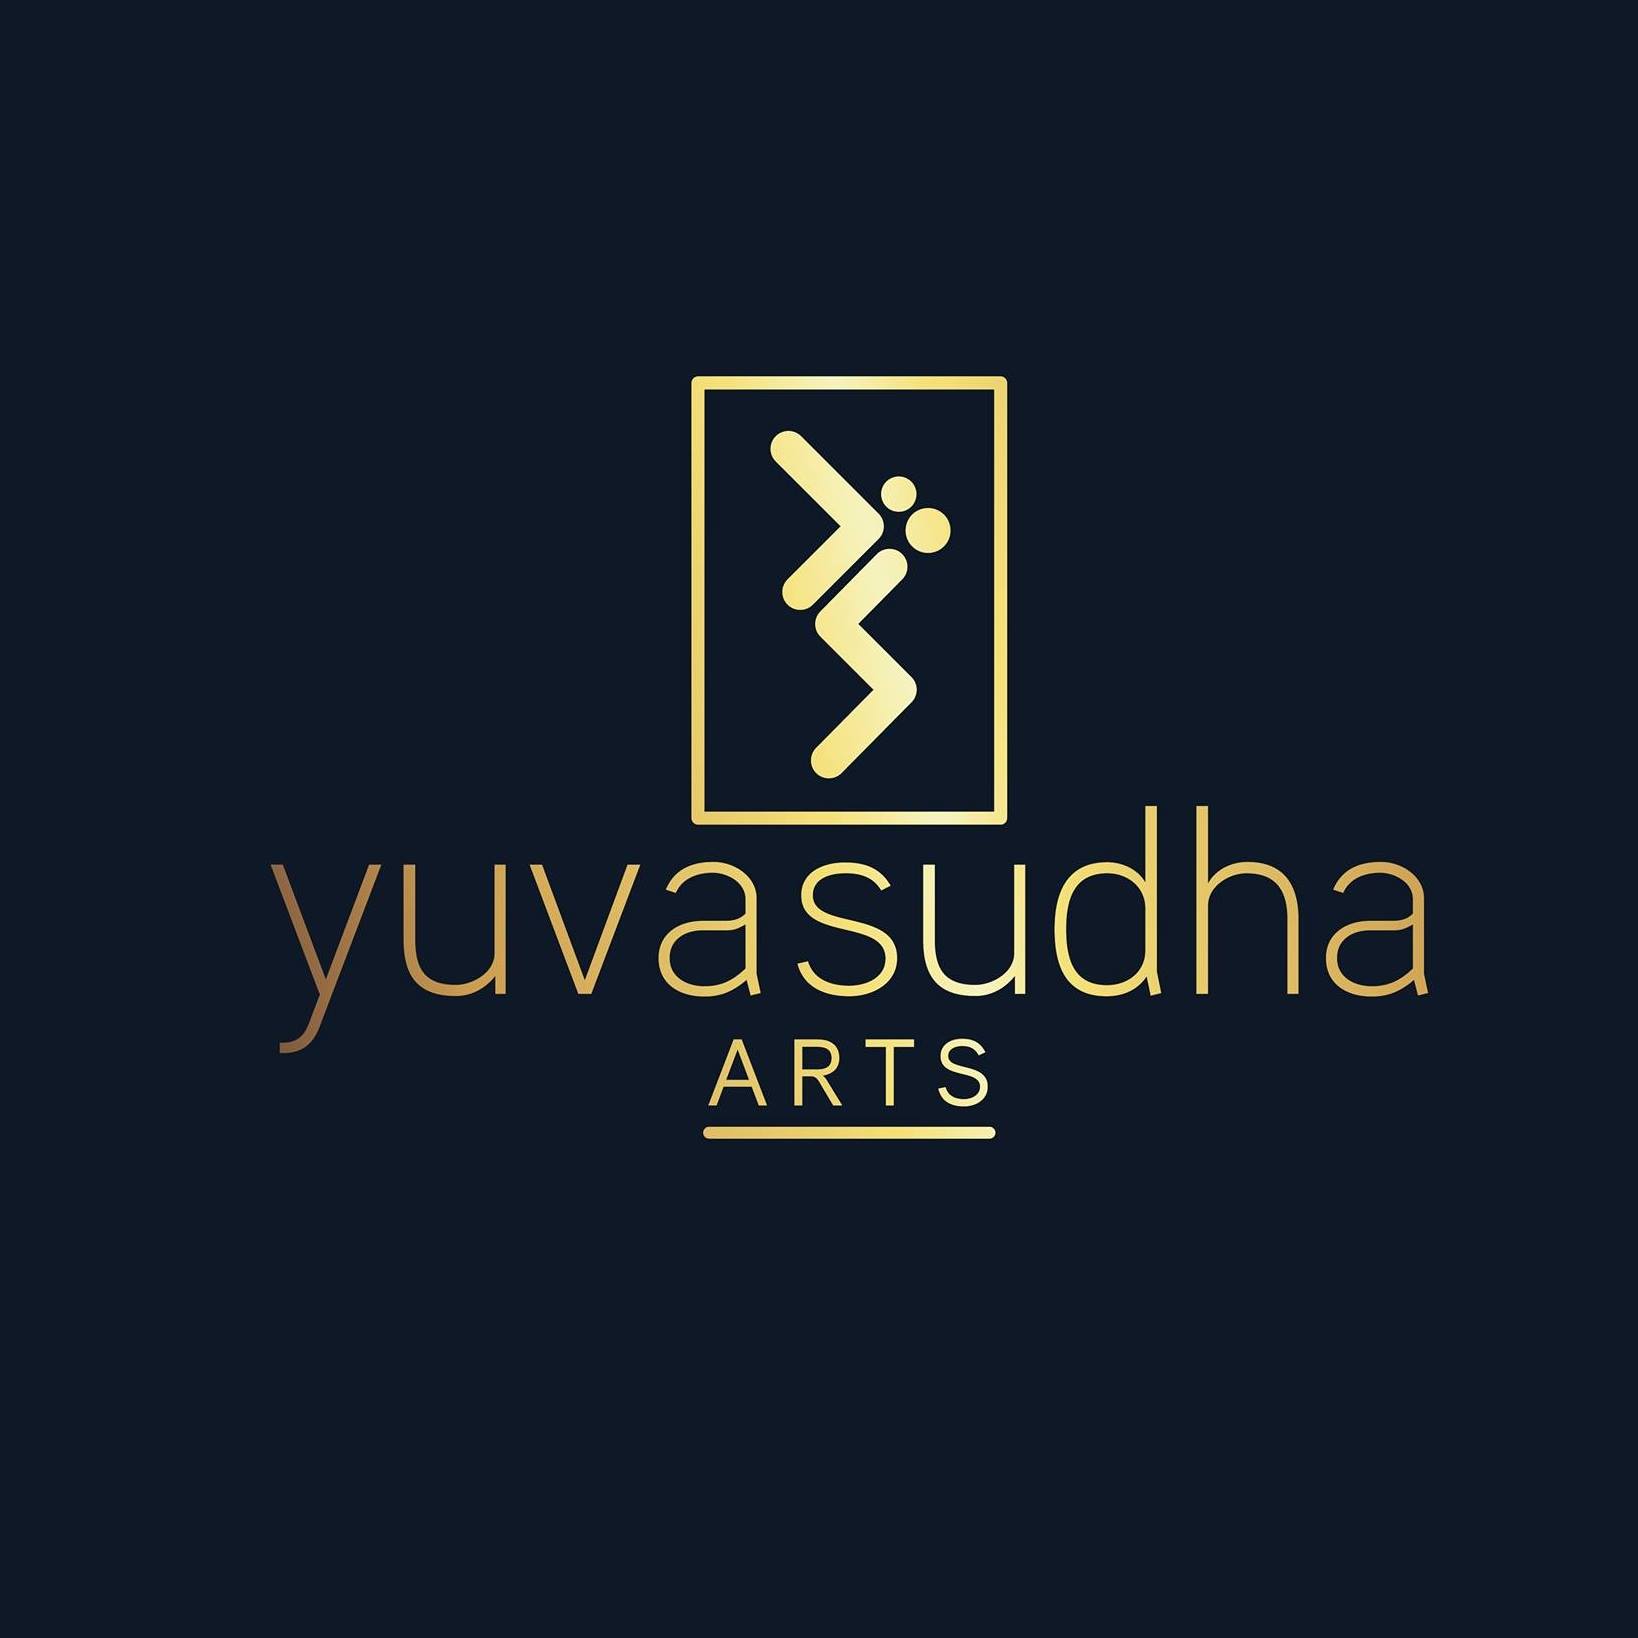 Yuvasudha Arts